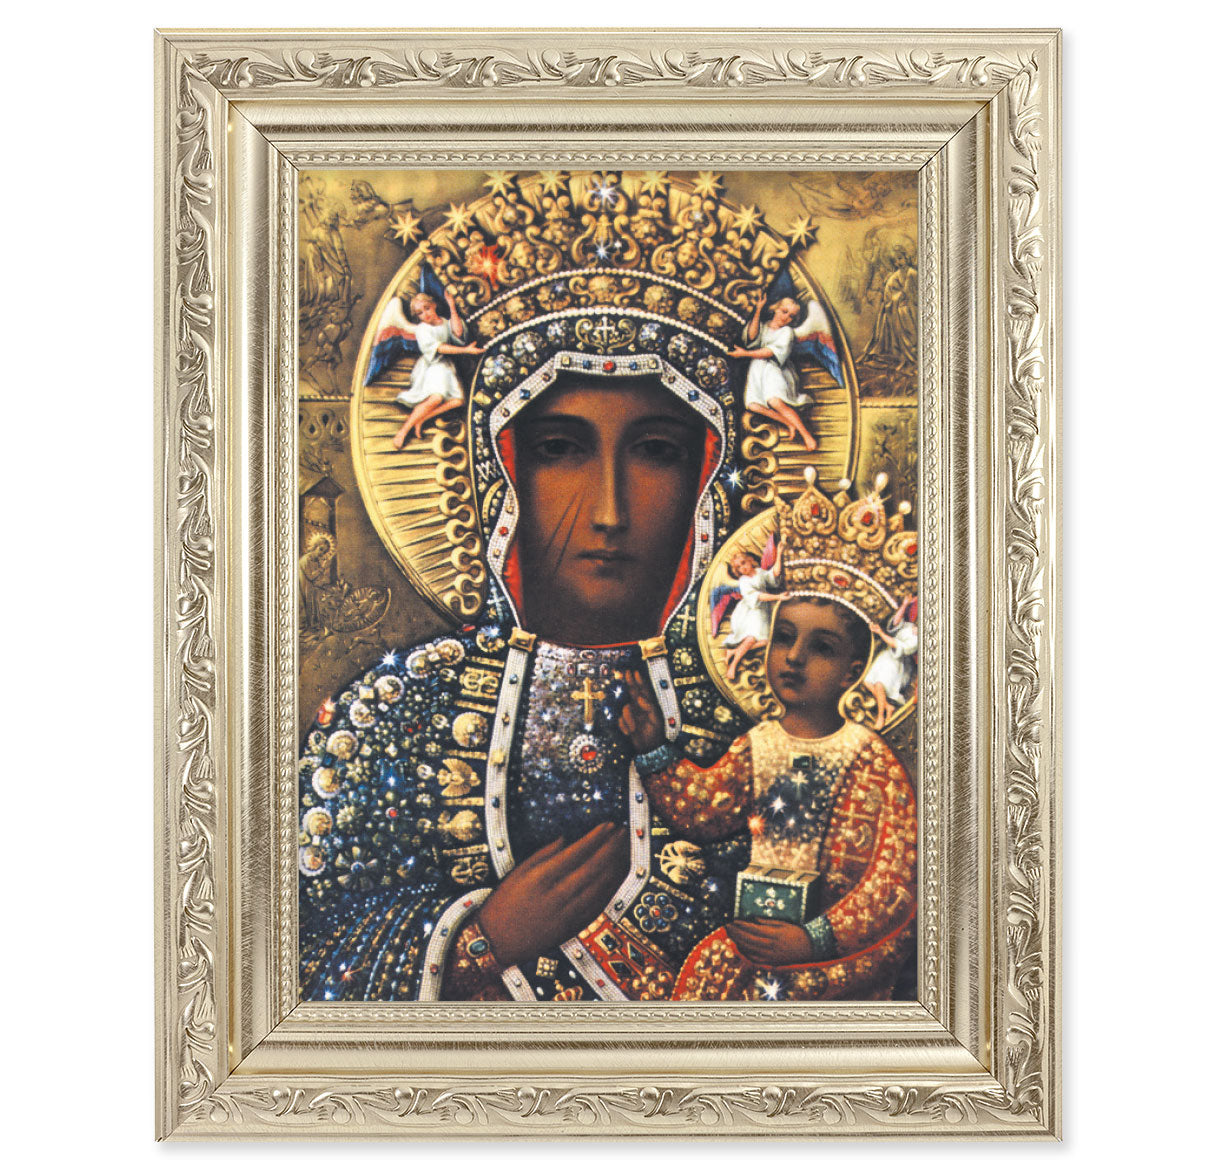 Our Lady of Czestochowa Silver Framed Art